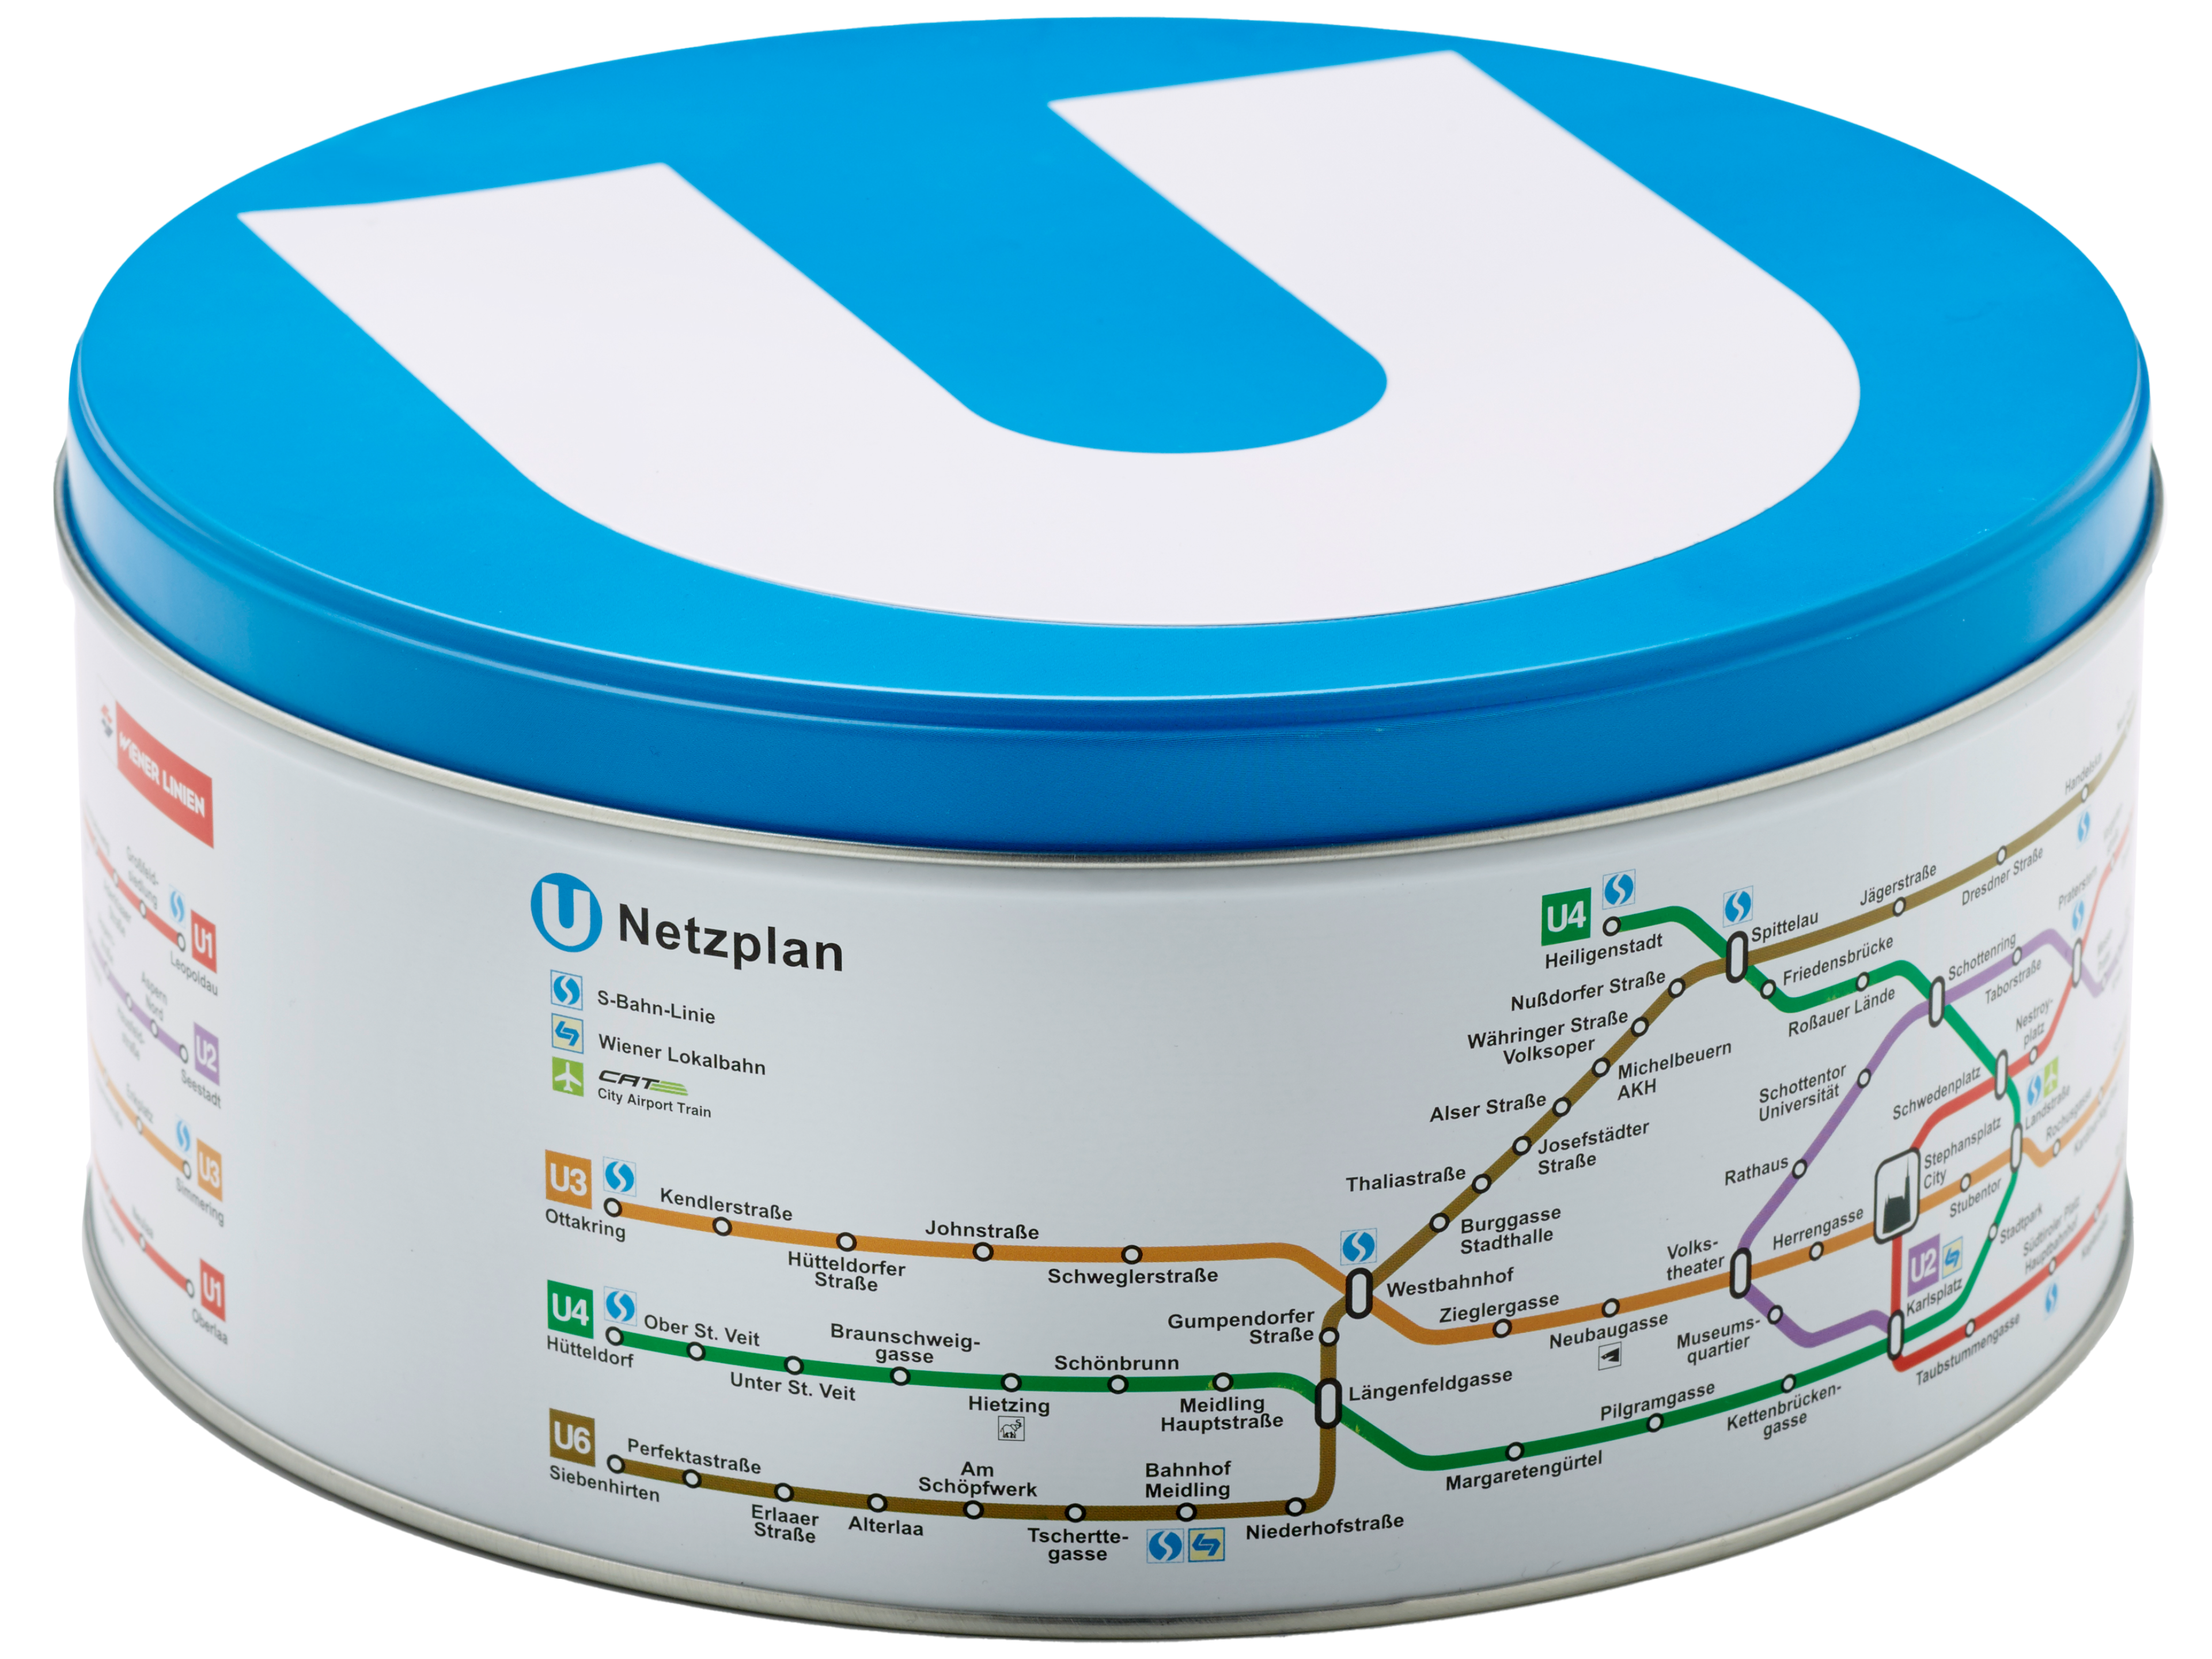 Keksdose mit U-Bahn-Netzplan